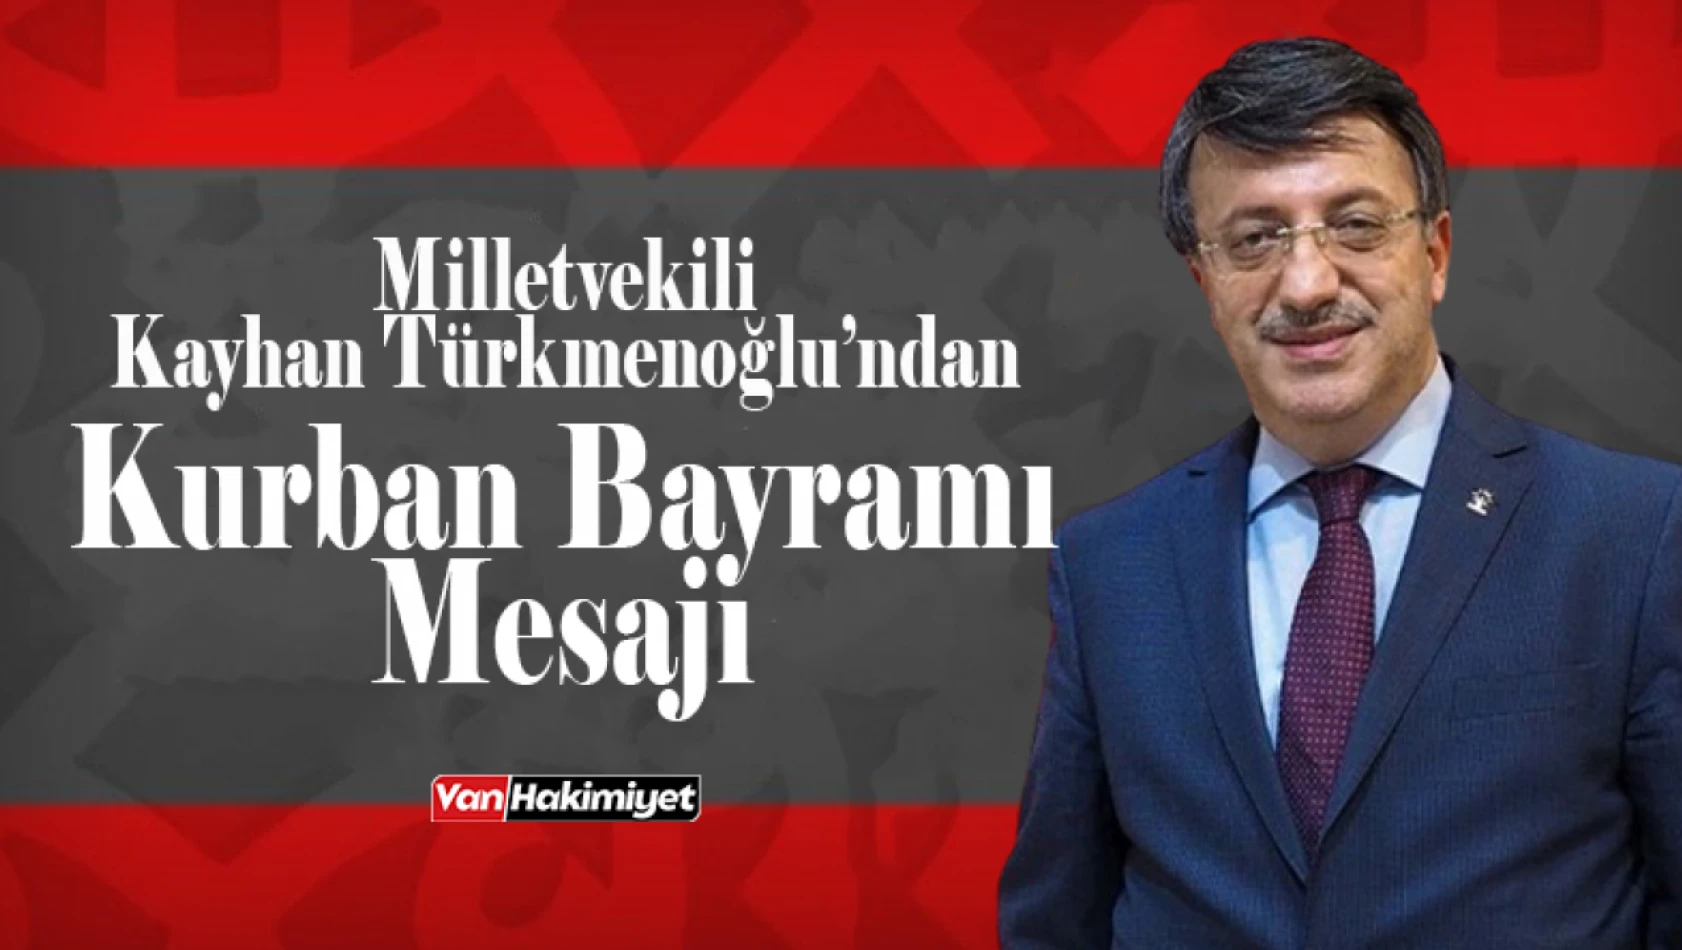 Milletvekili Türkmenoğlu'ndan 'Kurban Bayramı' mesajı